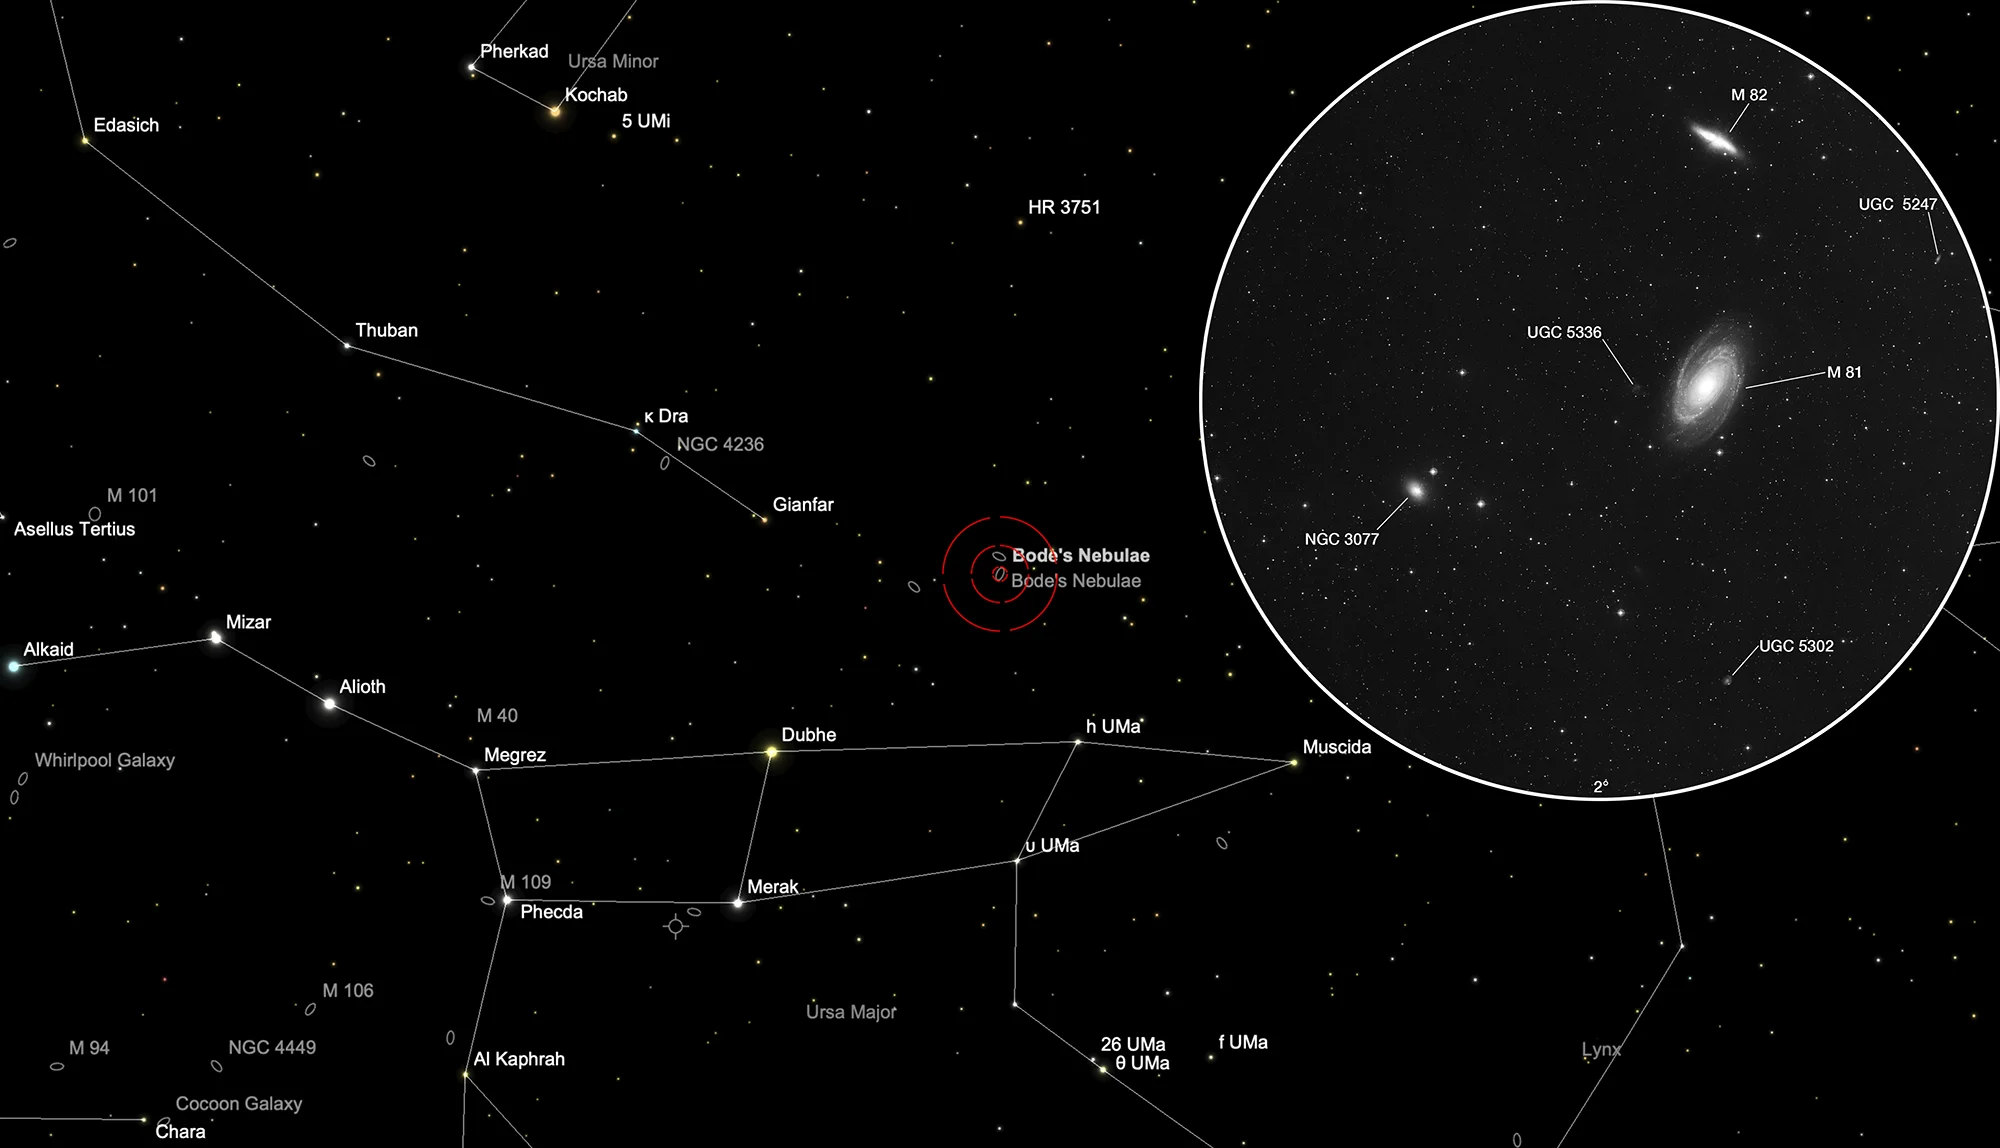 Karte M 81, M 82, NGC 3077